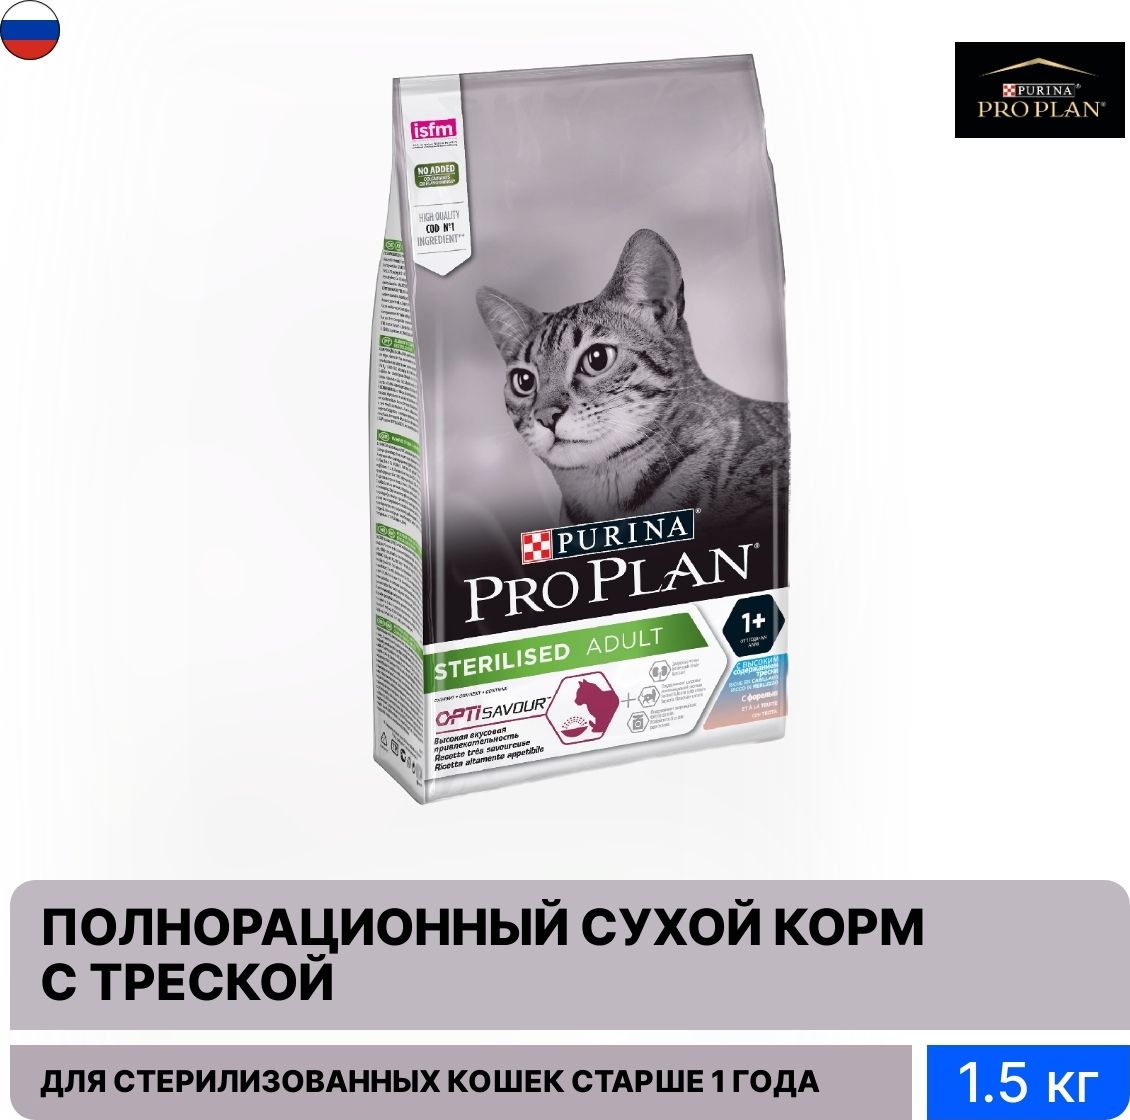 Pro plan для стерилизованных взрослых кошек. Pro Plan Live Clear Sterilized 1,4. Purina Pro Plan для стерилизованных кошек сухой корм таблица кормления.